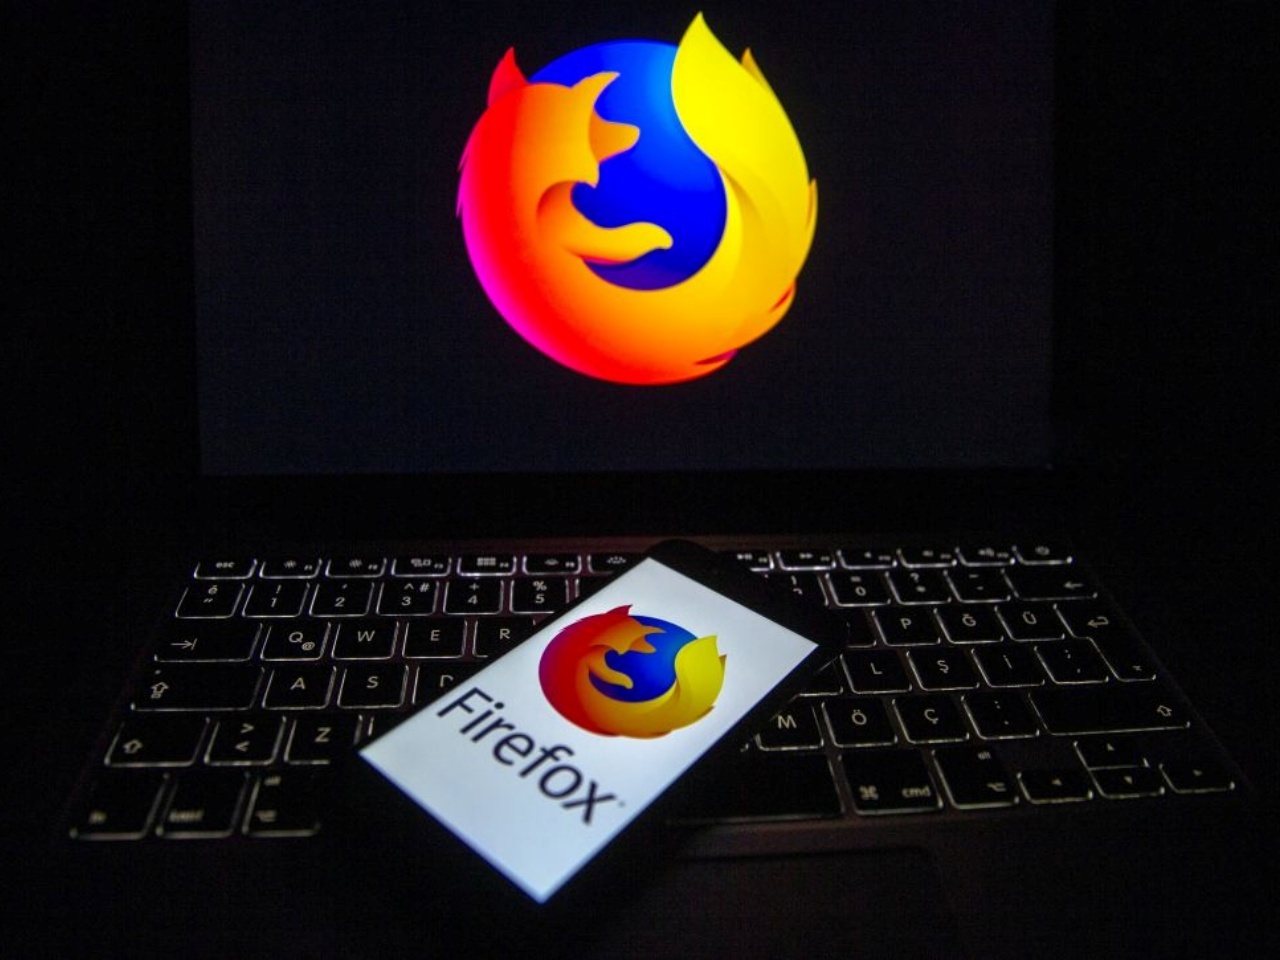 Firefoxのロゴを表示したスマホとノートPC